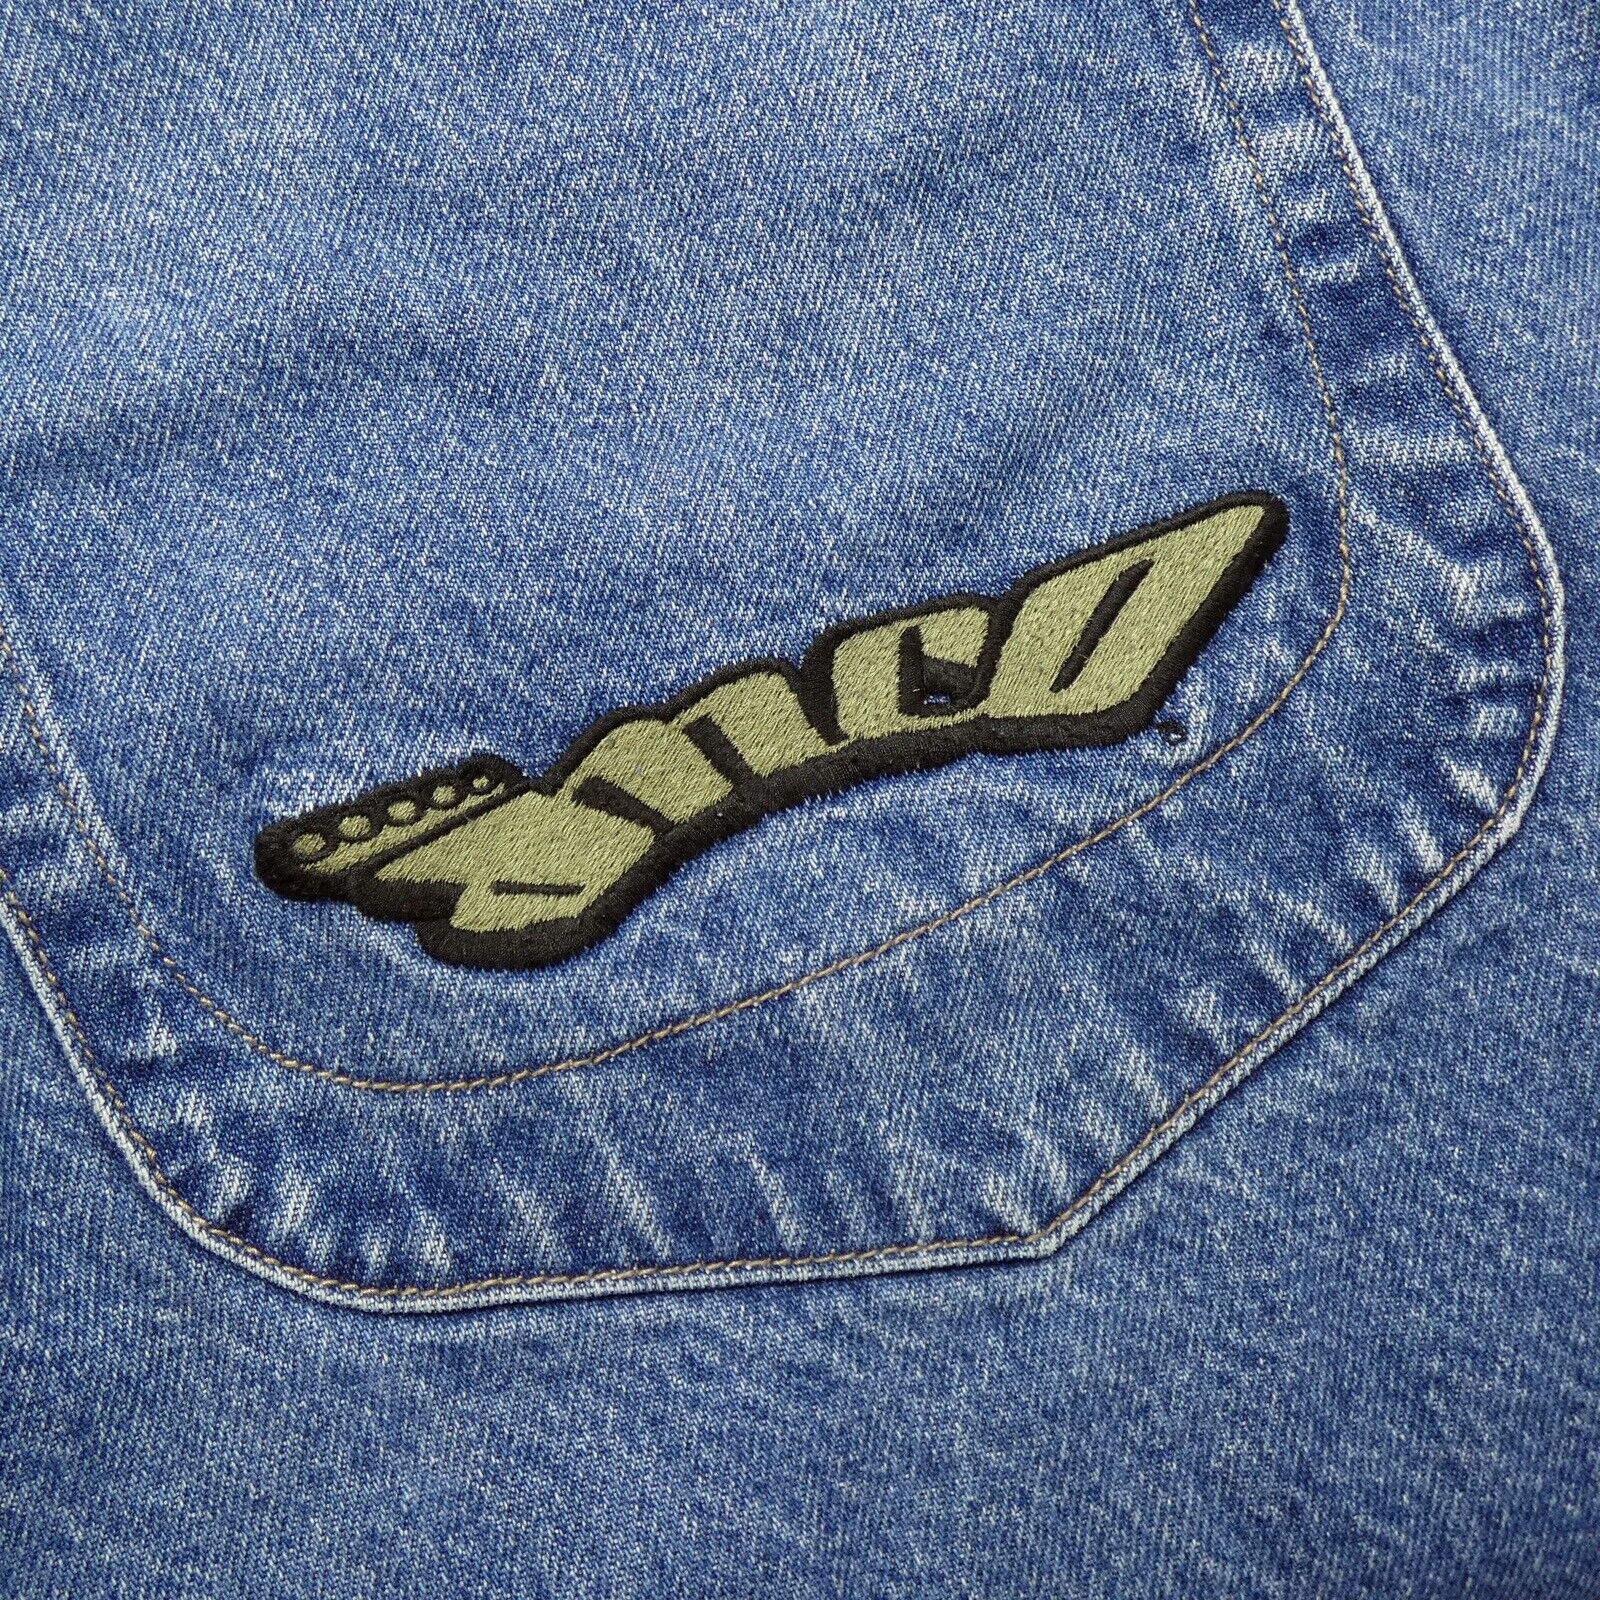 skarp besked meget fint Vintage JNCO Jeans Mens Wide Leg Denim Rave Skater Baggy 90s 33 X 30 Crown  Rare | eBay